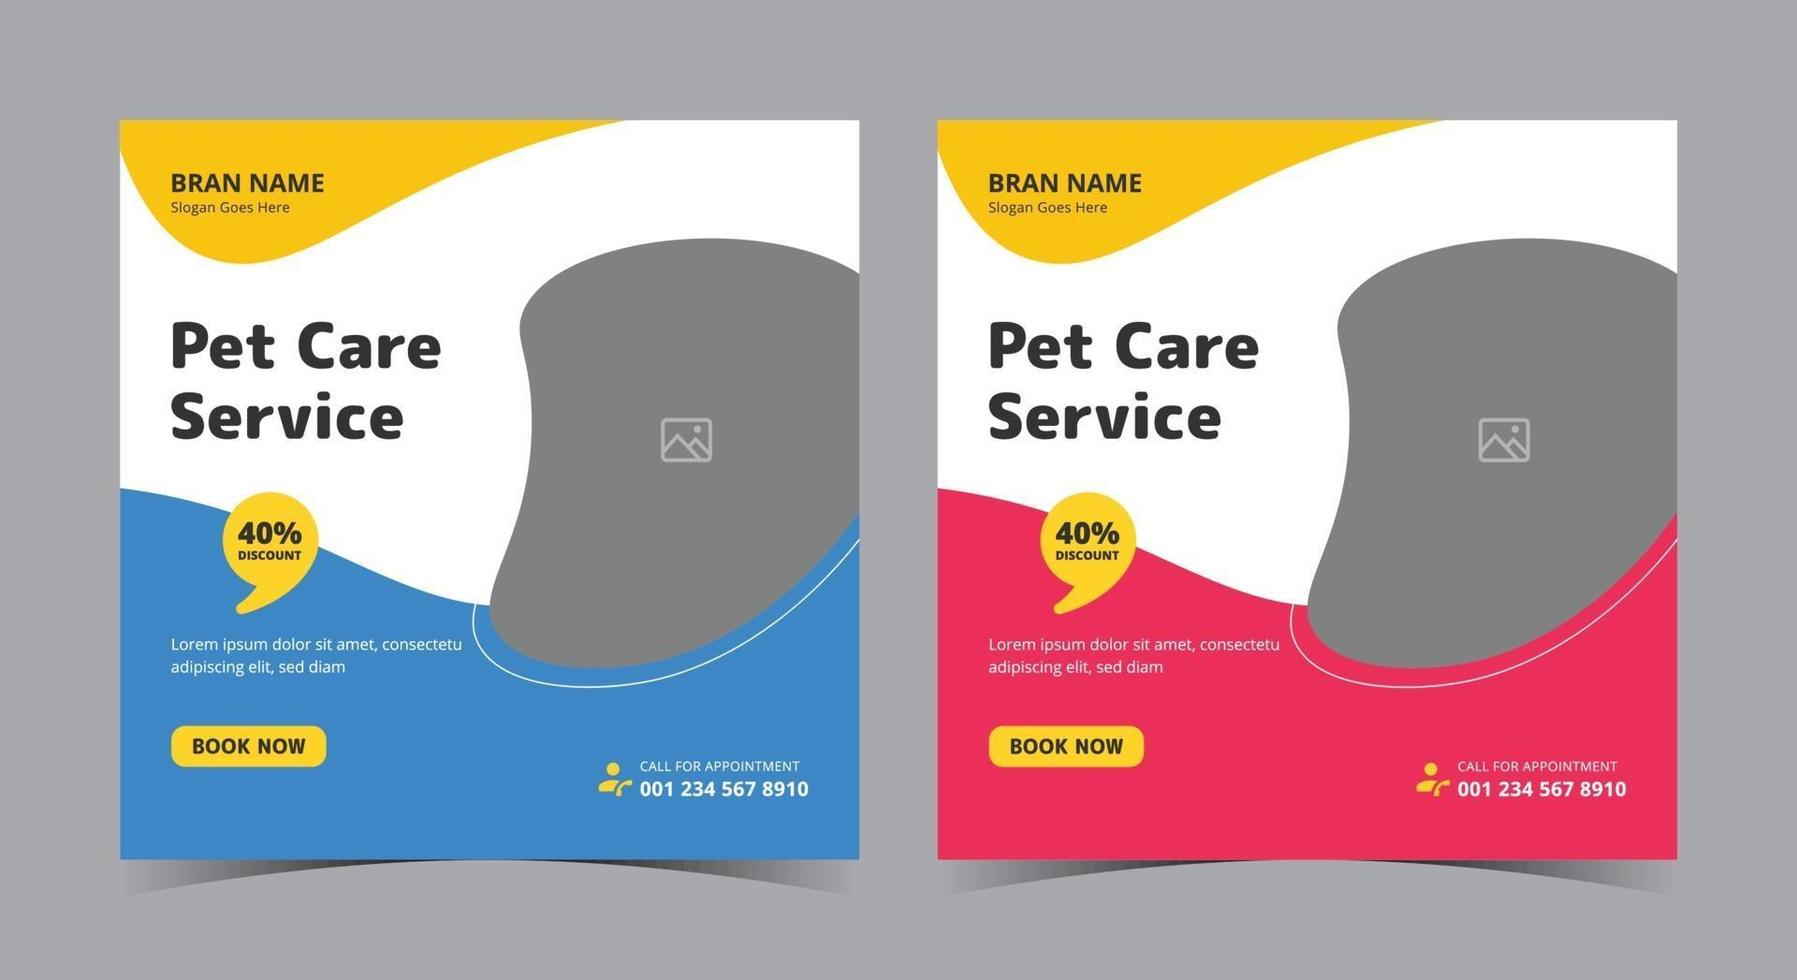 affiche de service de soins pour animaux de compagnie, publication et dépliant sur les réseaux sociaux de soins pour animaux de compagnie vecteur